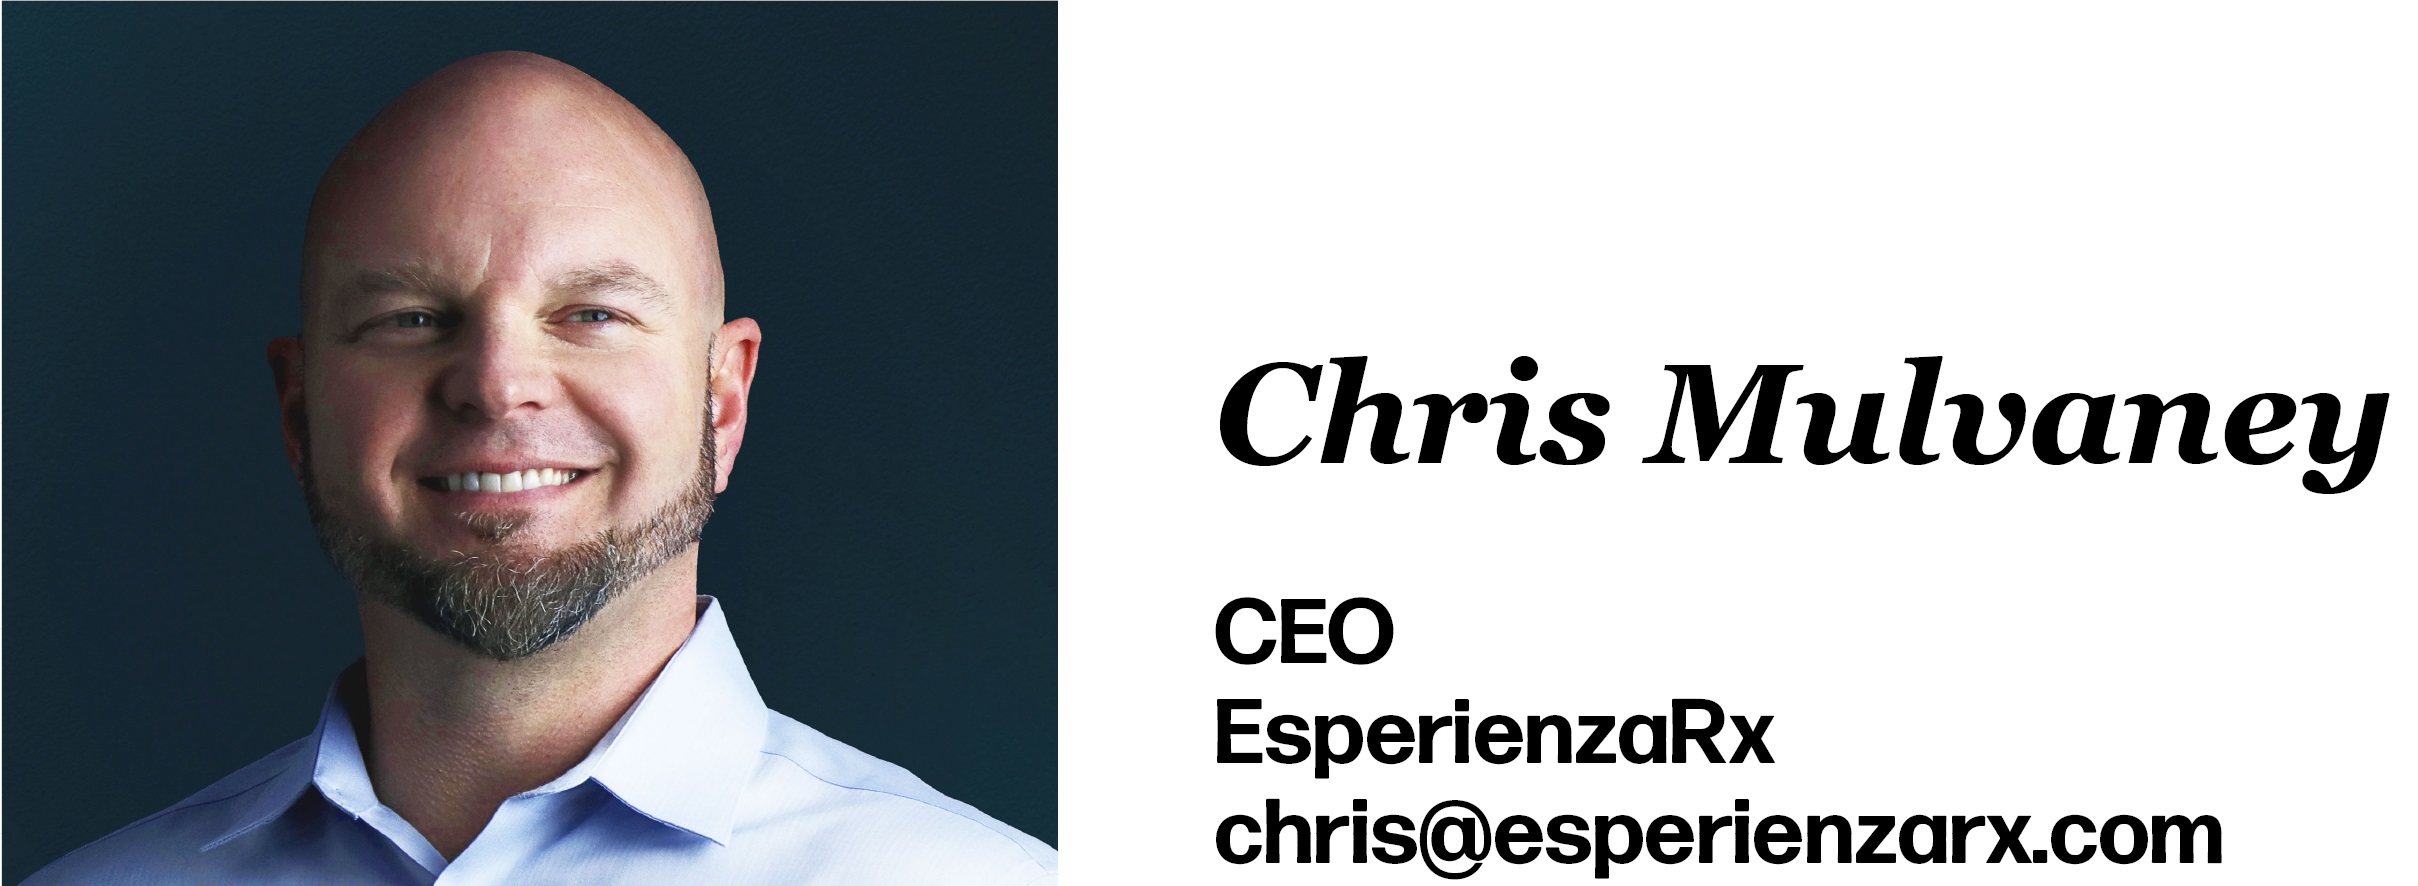 Chris Mulvaney is CEO of EsperienzaRx. His email is chris@esperienzarx.com.